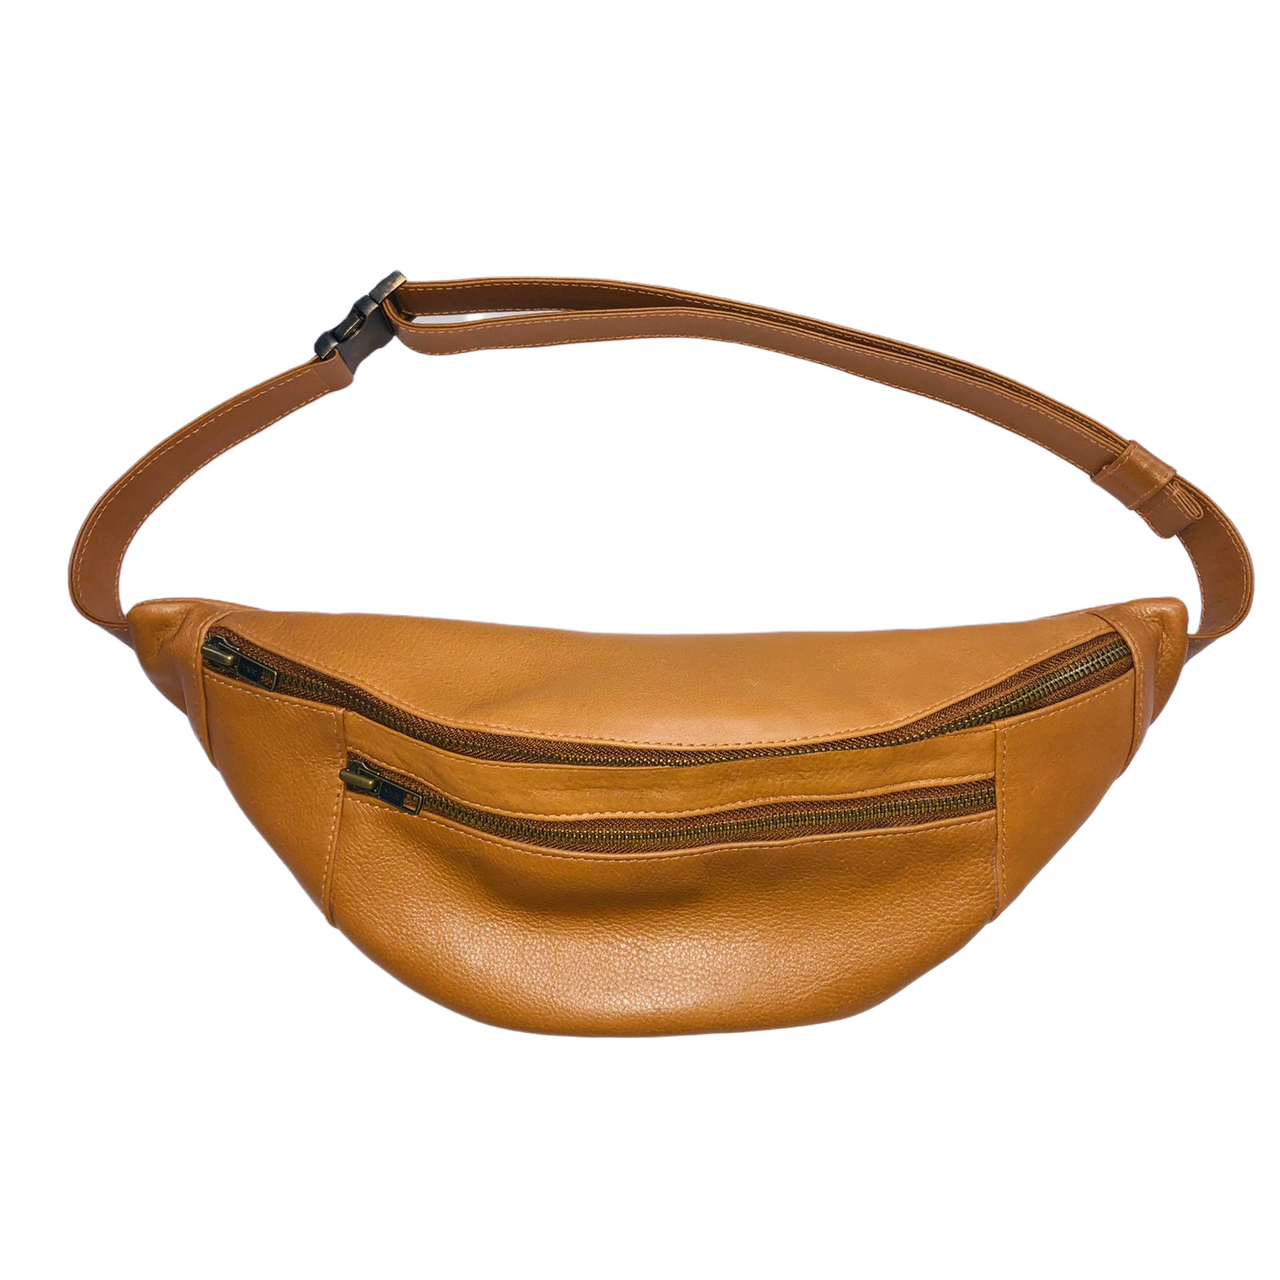 RemiLe05 Tan leather belt bag. - Jeanne Lottie